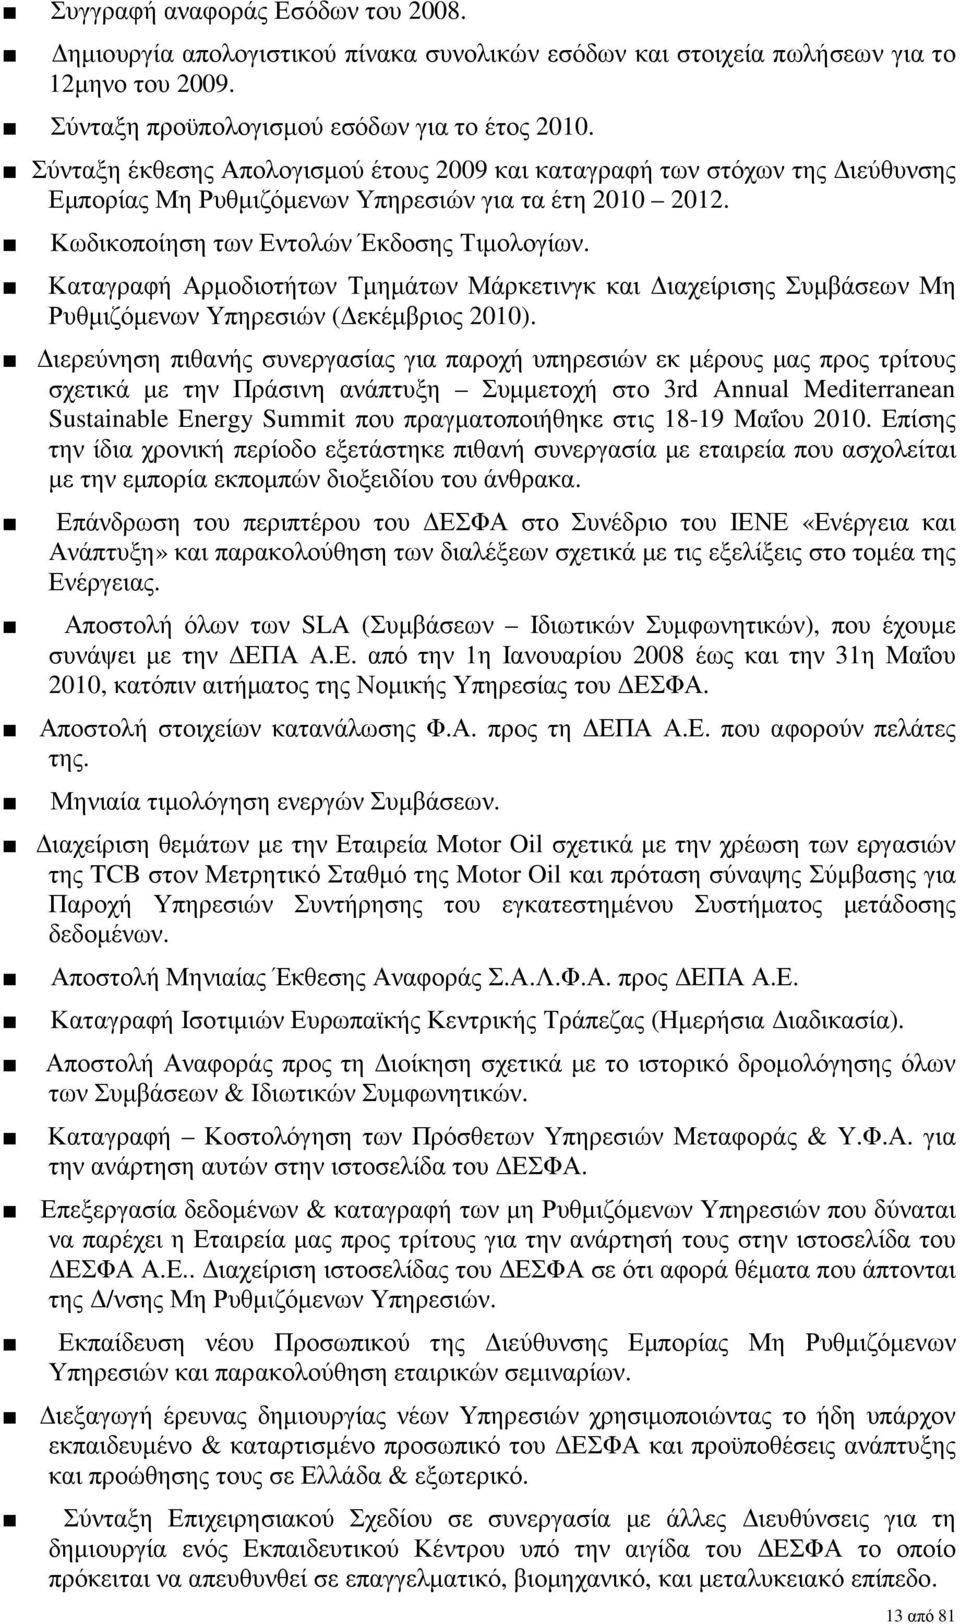 Καταγραφή Αρµοδιοτήτων Τµηµάτων Μάρκετινγκ και ιαχείρισης Συµβάσεων Μη Ρυθµιζόµενων Υπηρεσιών ( εκέµβριος 2010).